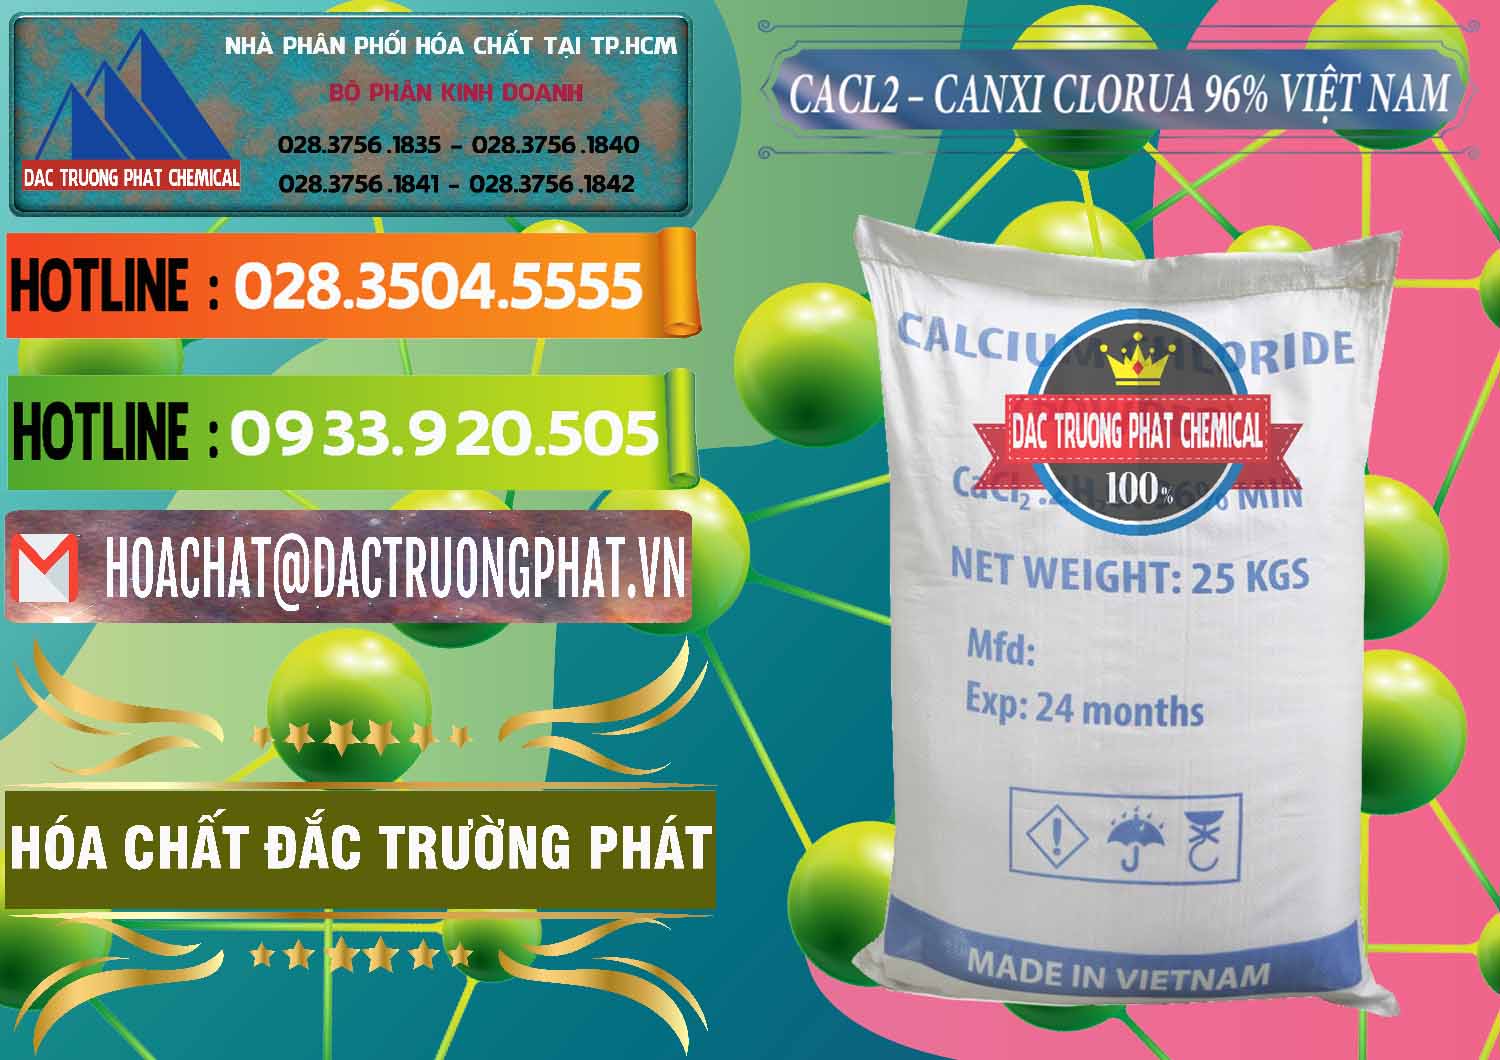 Nơi cung ứng - bán CaCl2 – Canxi Clorua 96% Việt Nam - 0236 - Công ty cung ứng & phân phối hóa chất tại TP.HCM - cungcaphoachat.com.vn